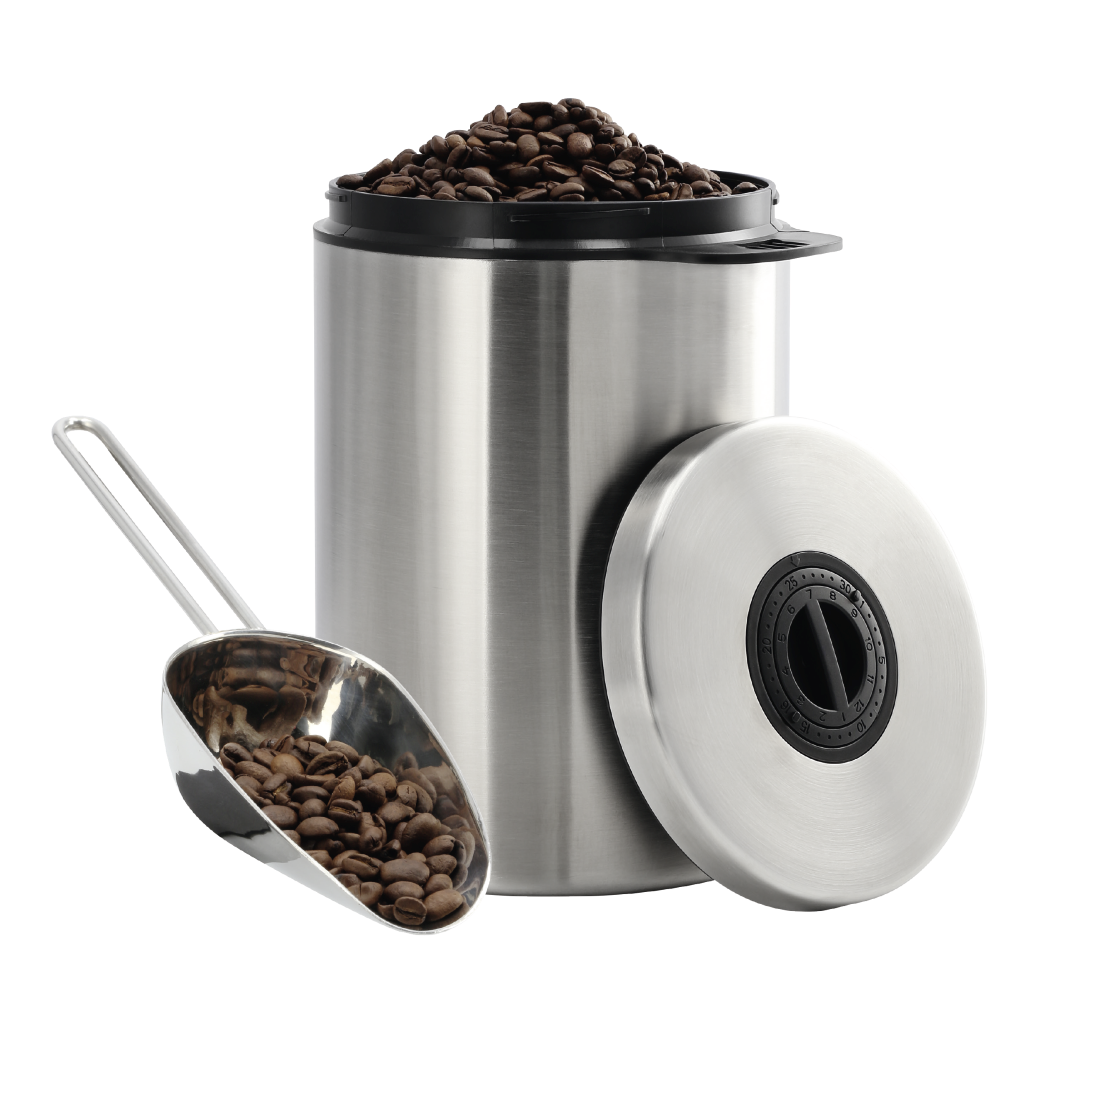 abx Druckfähige Abbildung - Xavax, Edelstahldose für 1 kg Kaffeebohnen, mit Schaufel